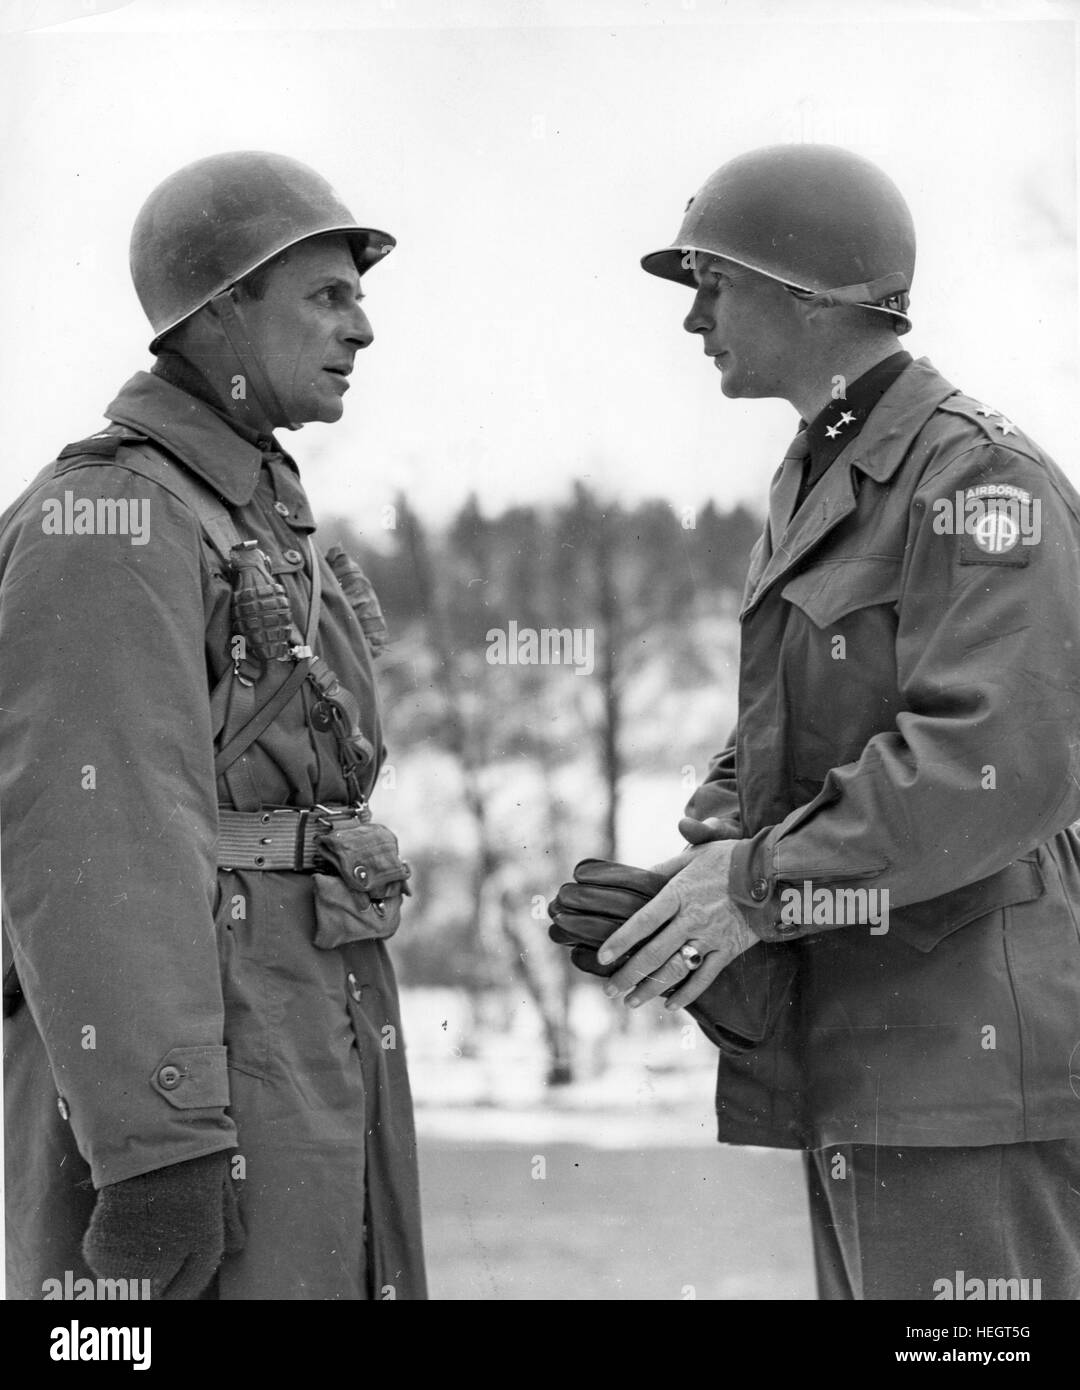 JAMES GAVIN a la derecha como Comandante General de la 82ª División Aerotransportada estadounidense confiere con el General Matthew Ridgway Comandante del XVIII Cuerpo de Ejército Aerotransportado el 19 de diciembre de 1944, durante la Batalla de las Ardenas. Foto cuerpo señal de US Foto de stock